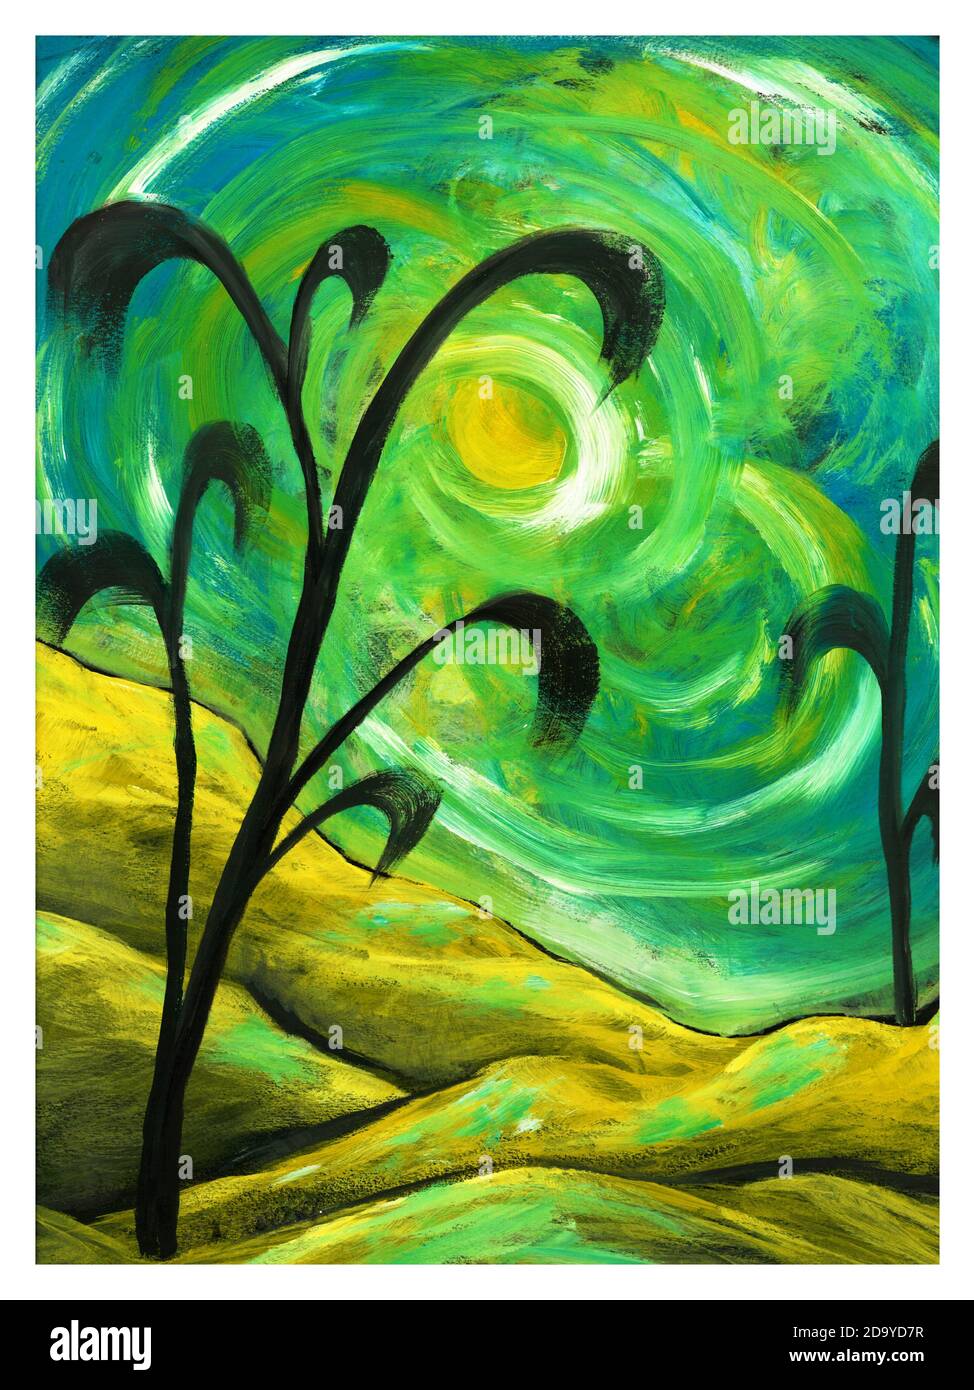 Illustration abstraite du paysage. Collines, lune, ciel vert et jaune et arbres stylisés noirs. Peint par le photographe. Banque D'Images